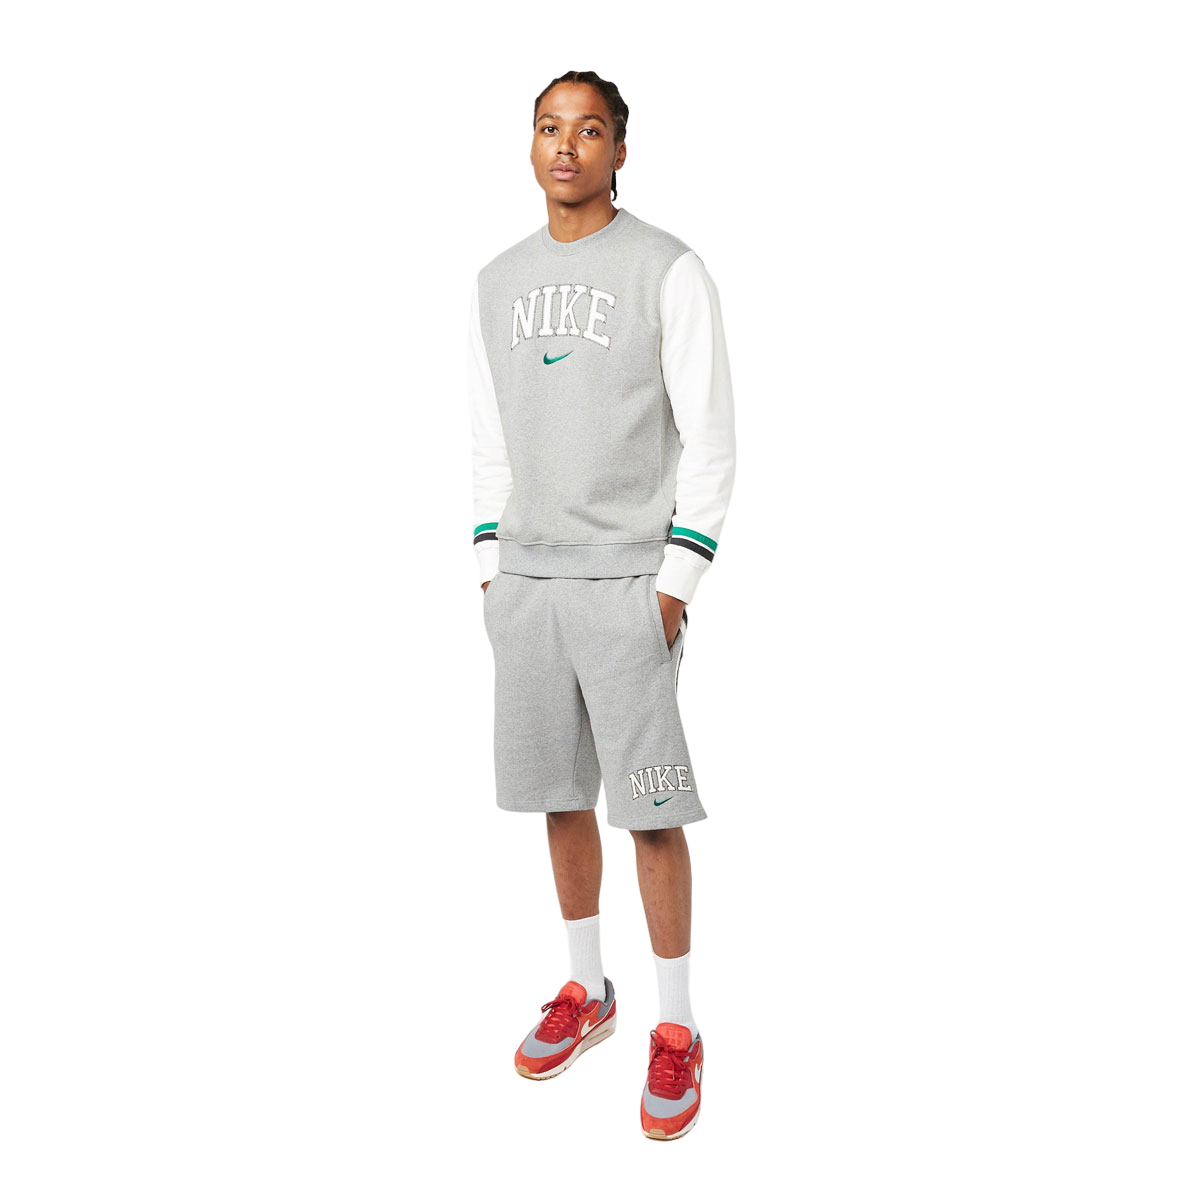 Nike Men's Retro Crew Sweatshirt - KickzStore